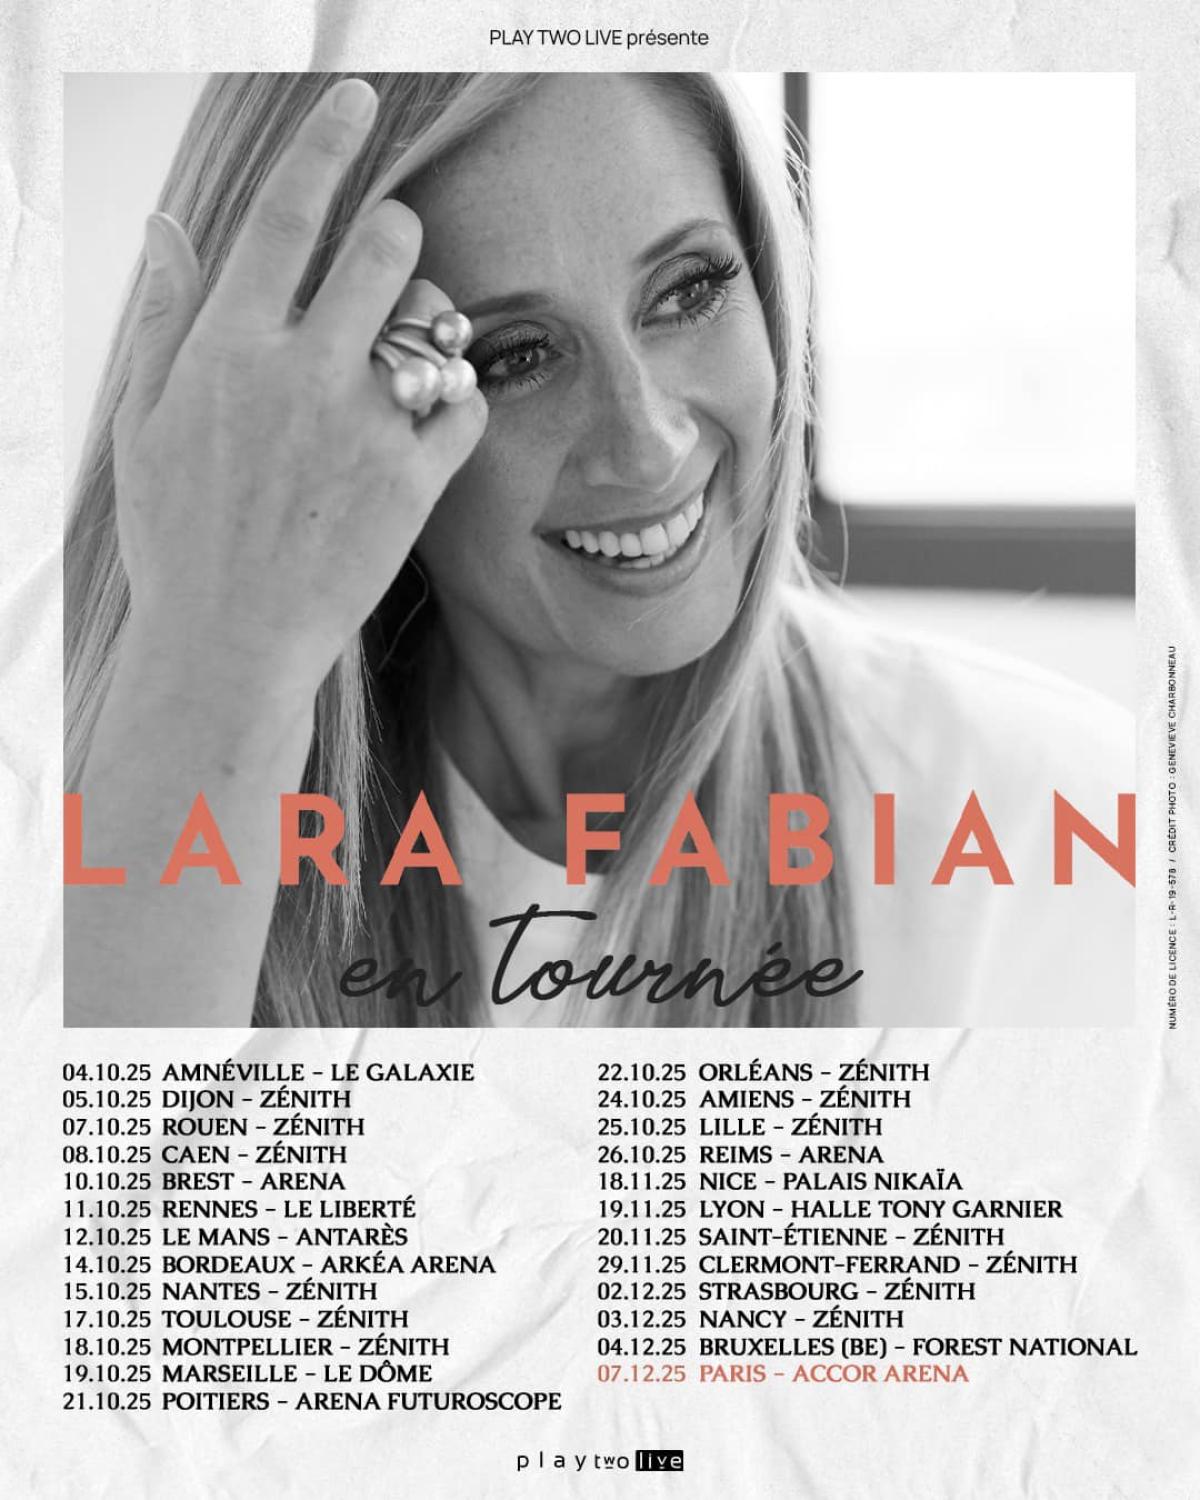 Lara Fabian at Zenith Orleans Tickets